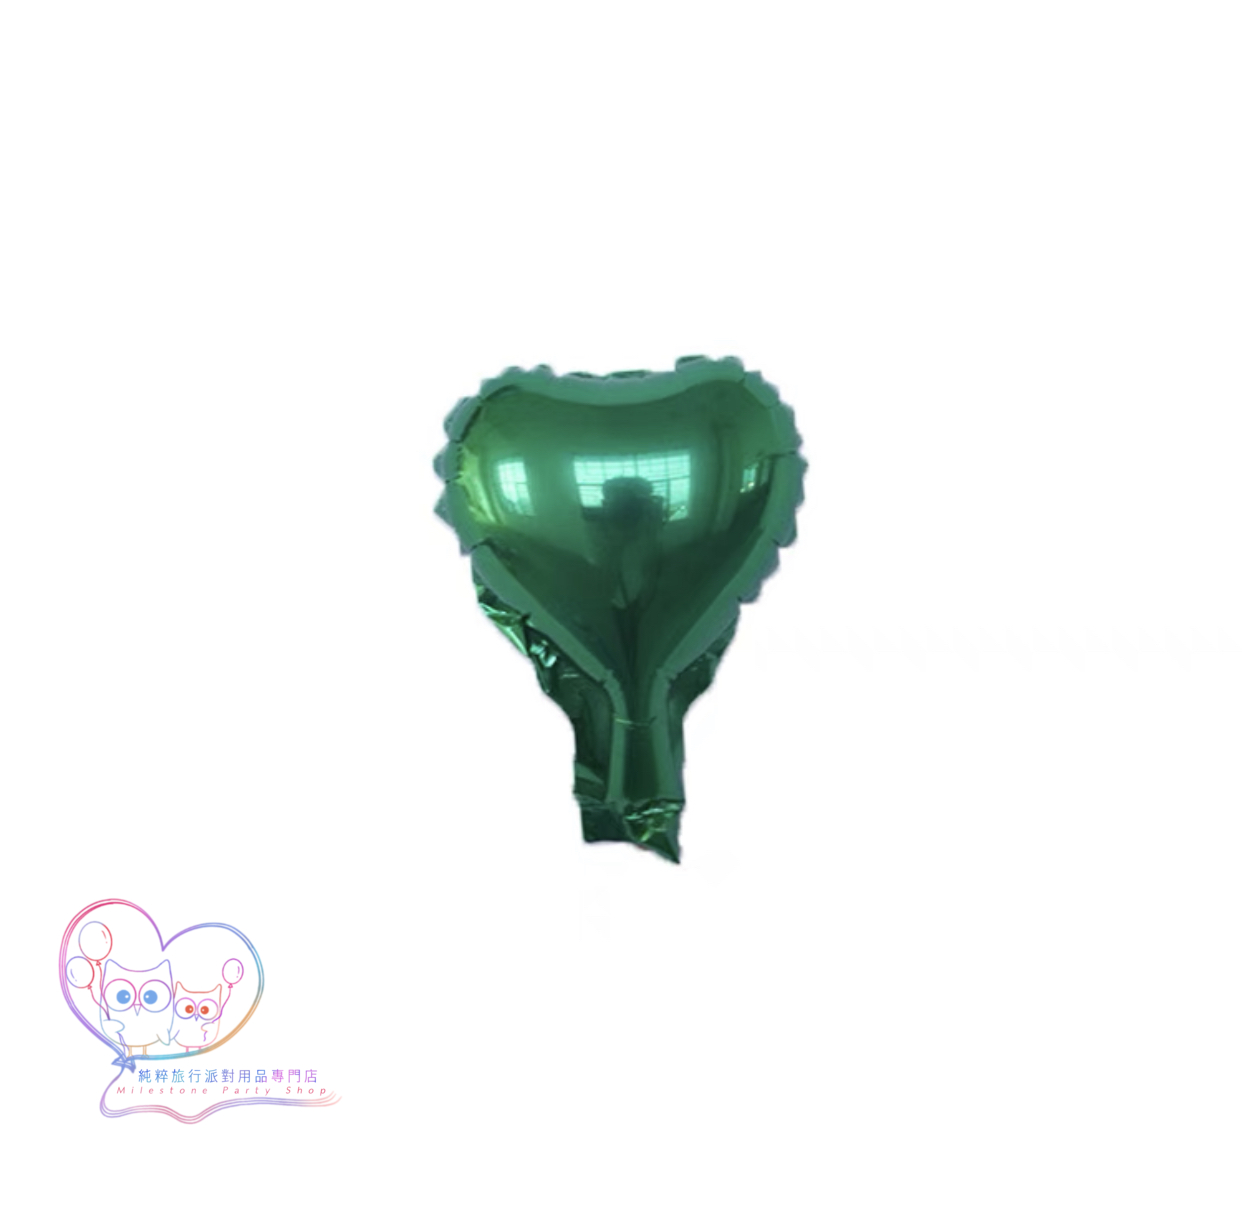 5吋心心鋁膜氣球 (綠色) 5H6